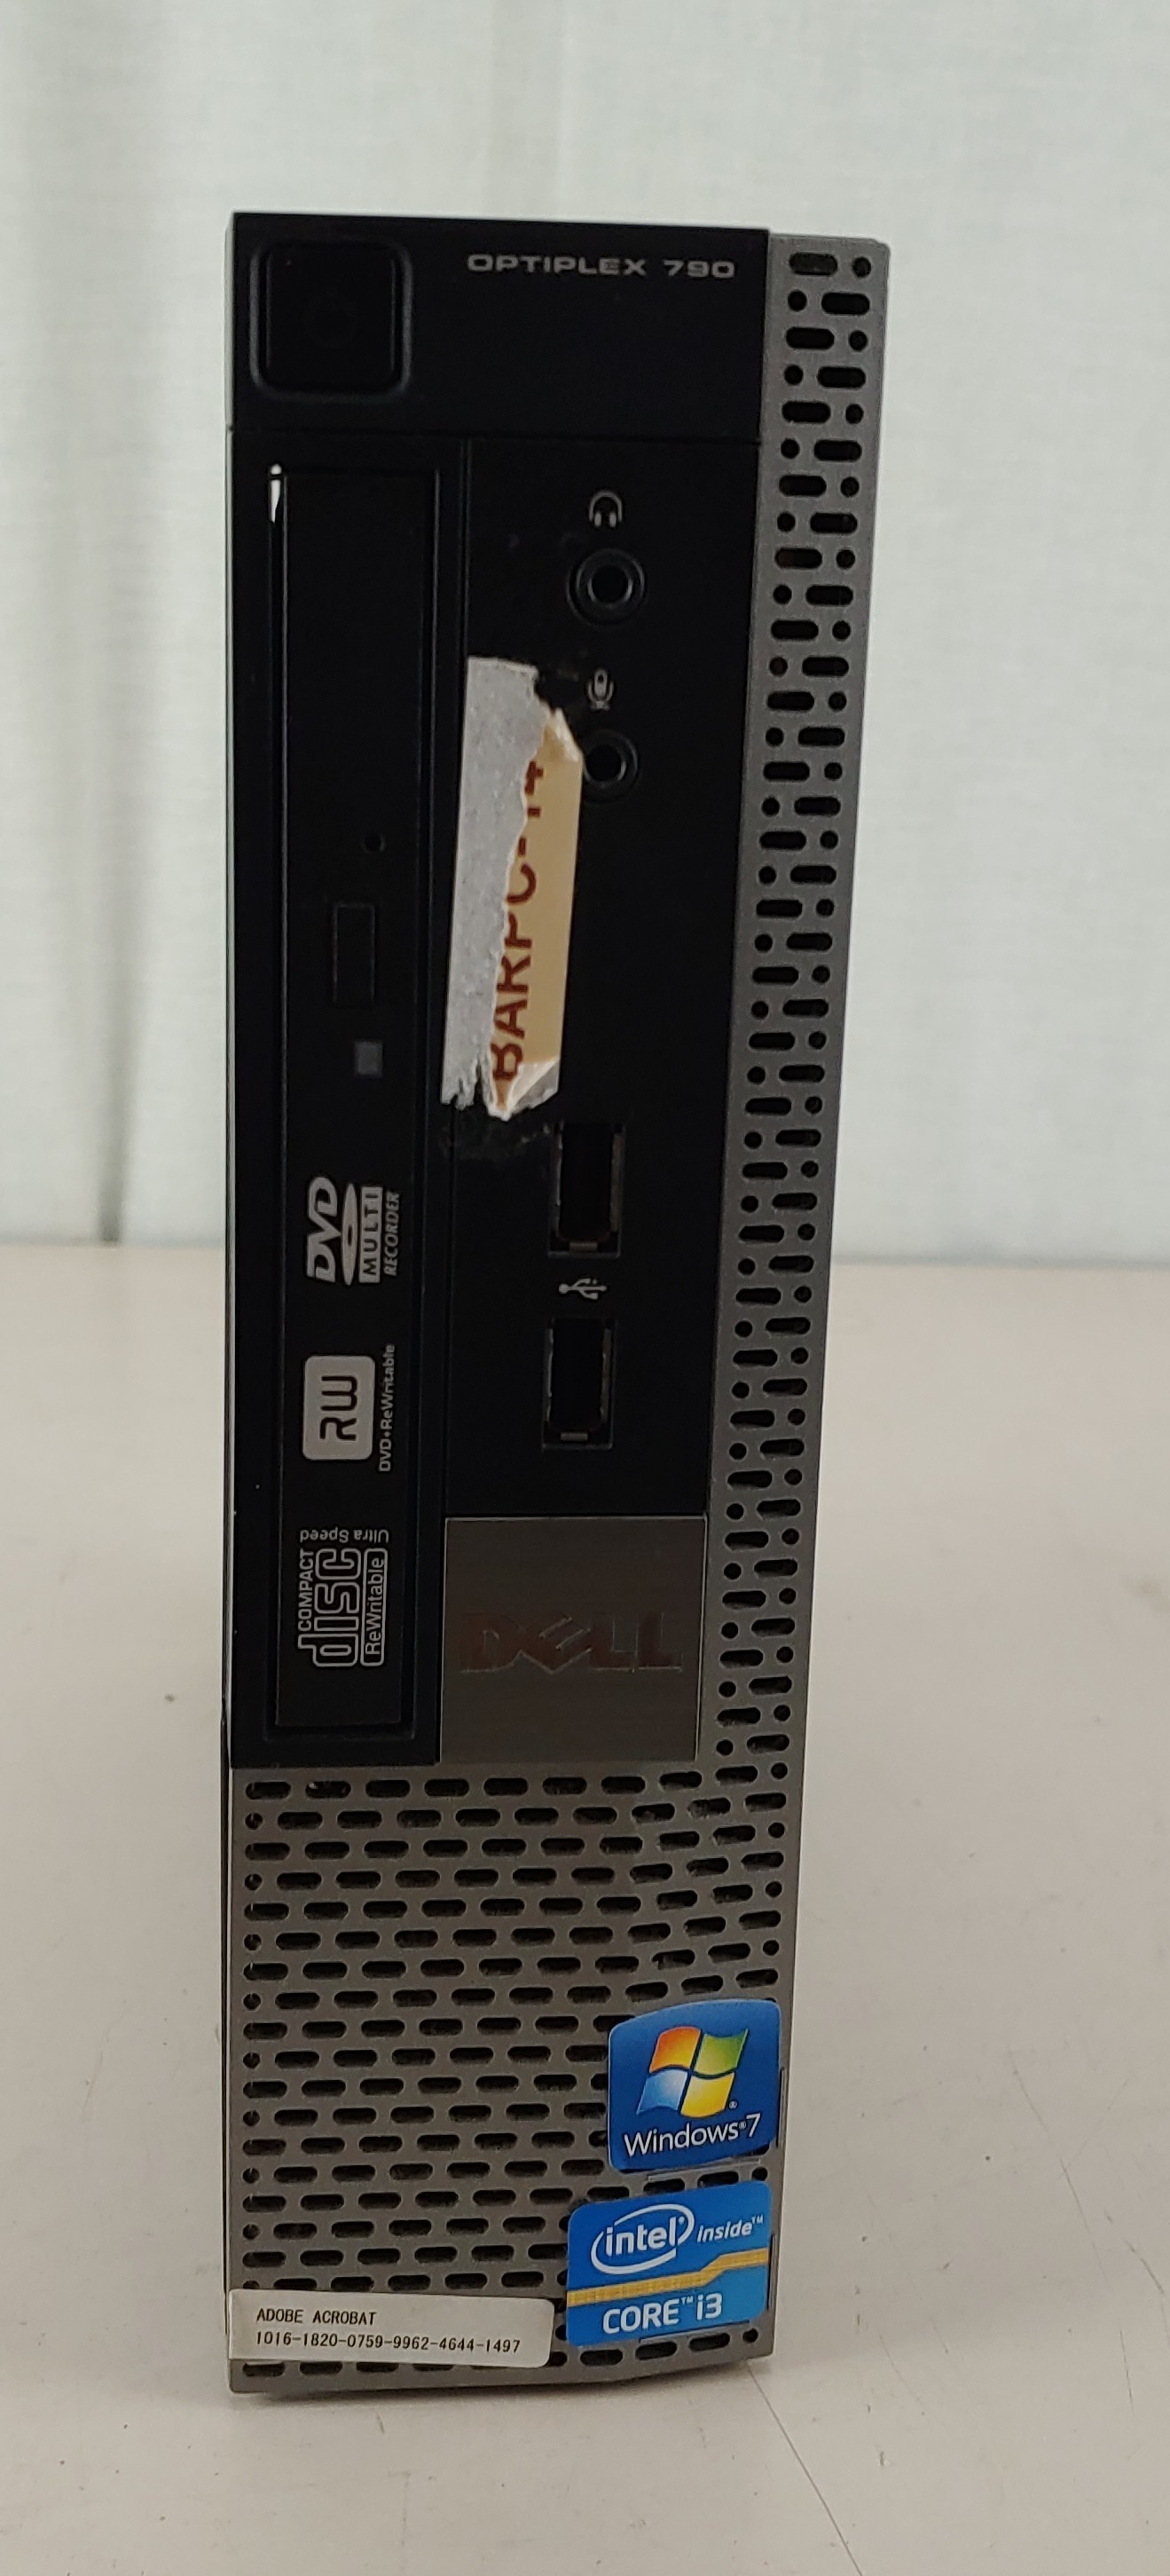 Dell Optiplex 790 USFF Desktop PC i3-2120 3.30GHz 4GB 500GB HDD Linux Mint